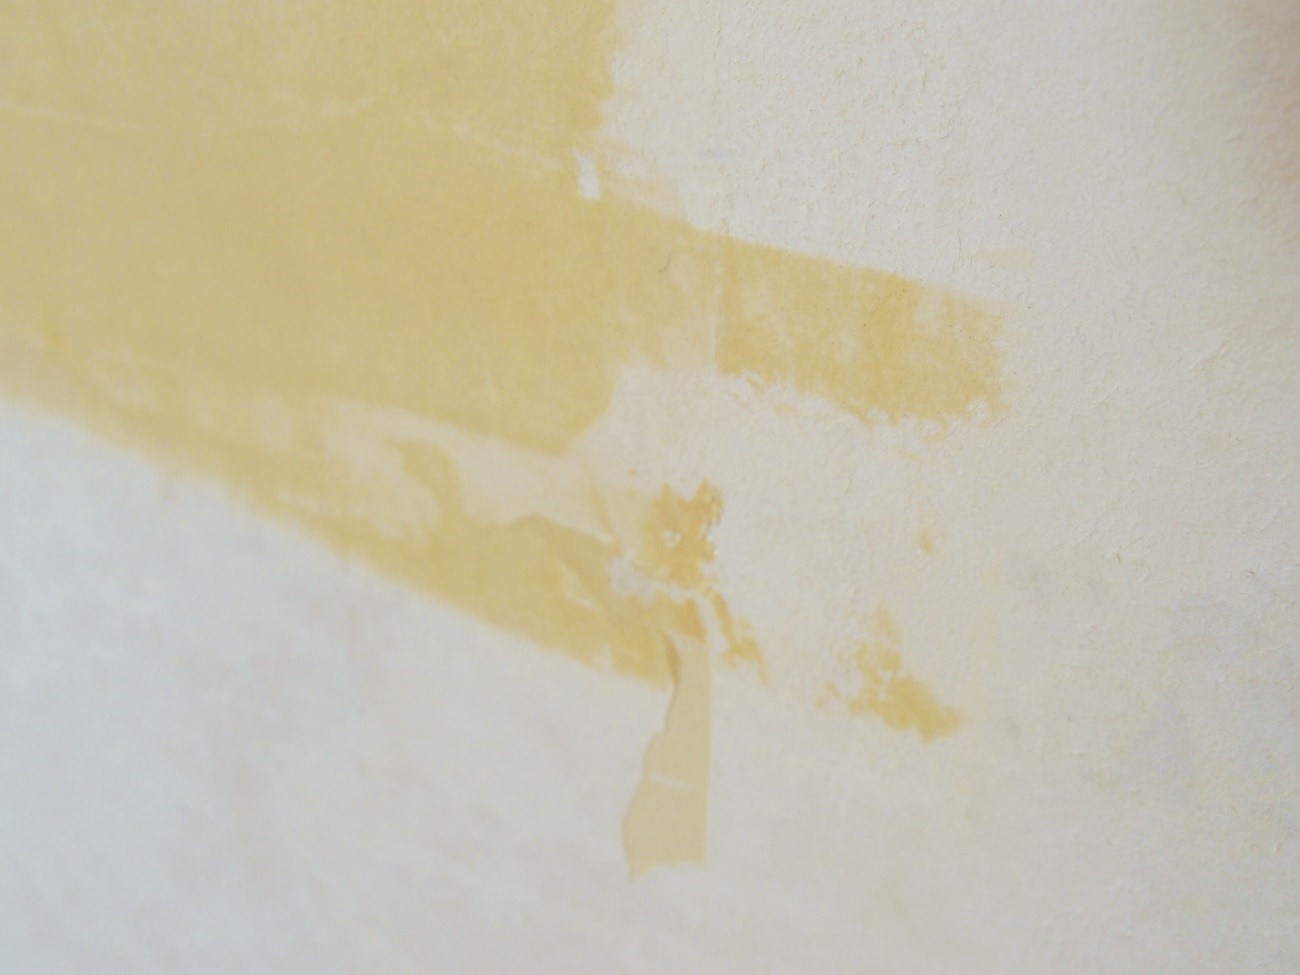 壁パテ埋めのコツは パテの種類と上手な塗り方 使い方